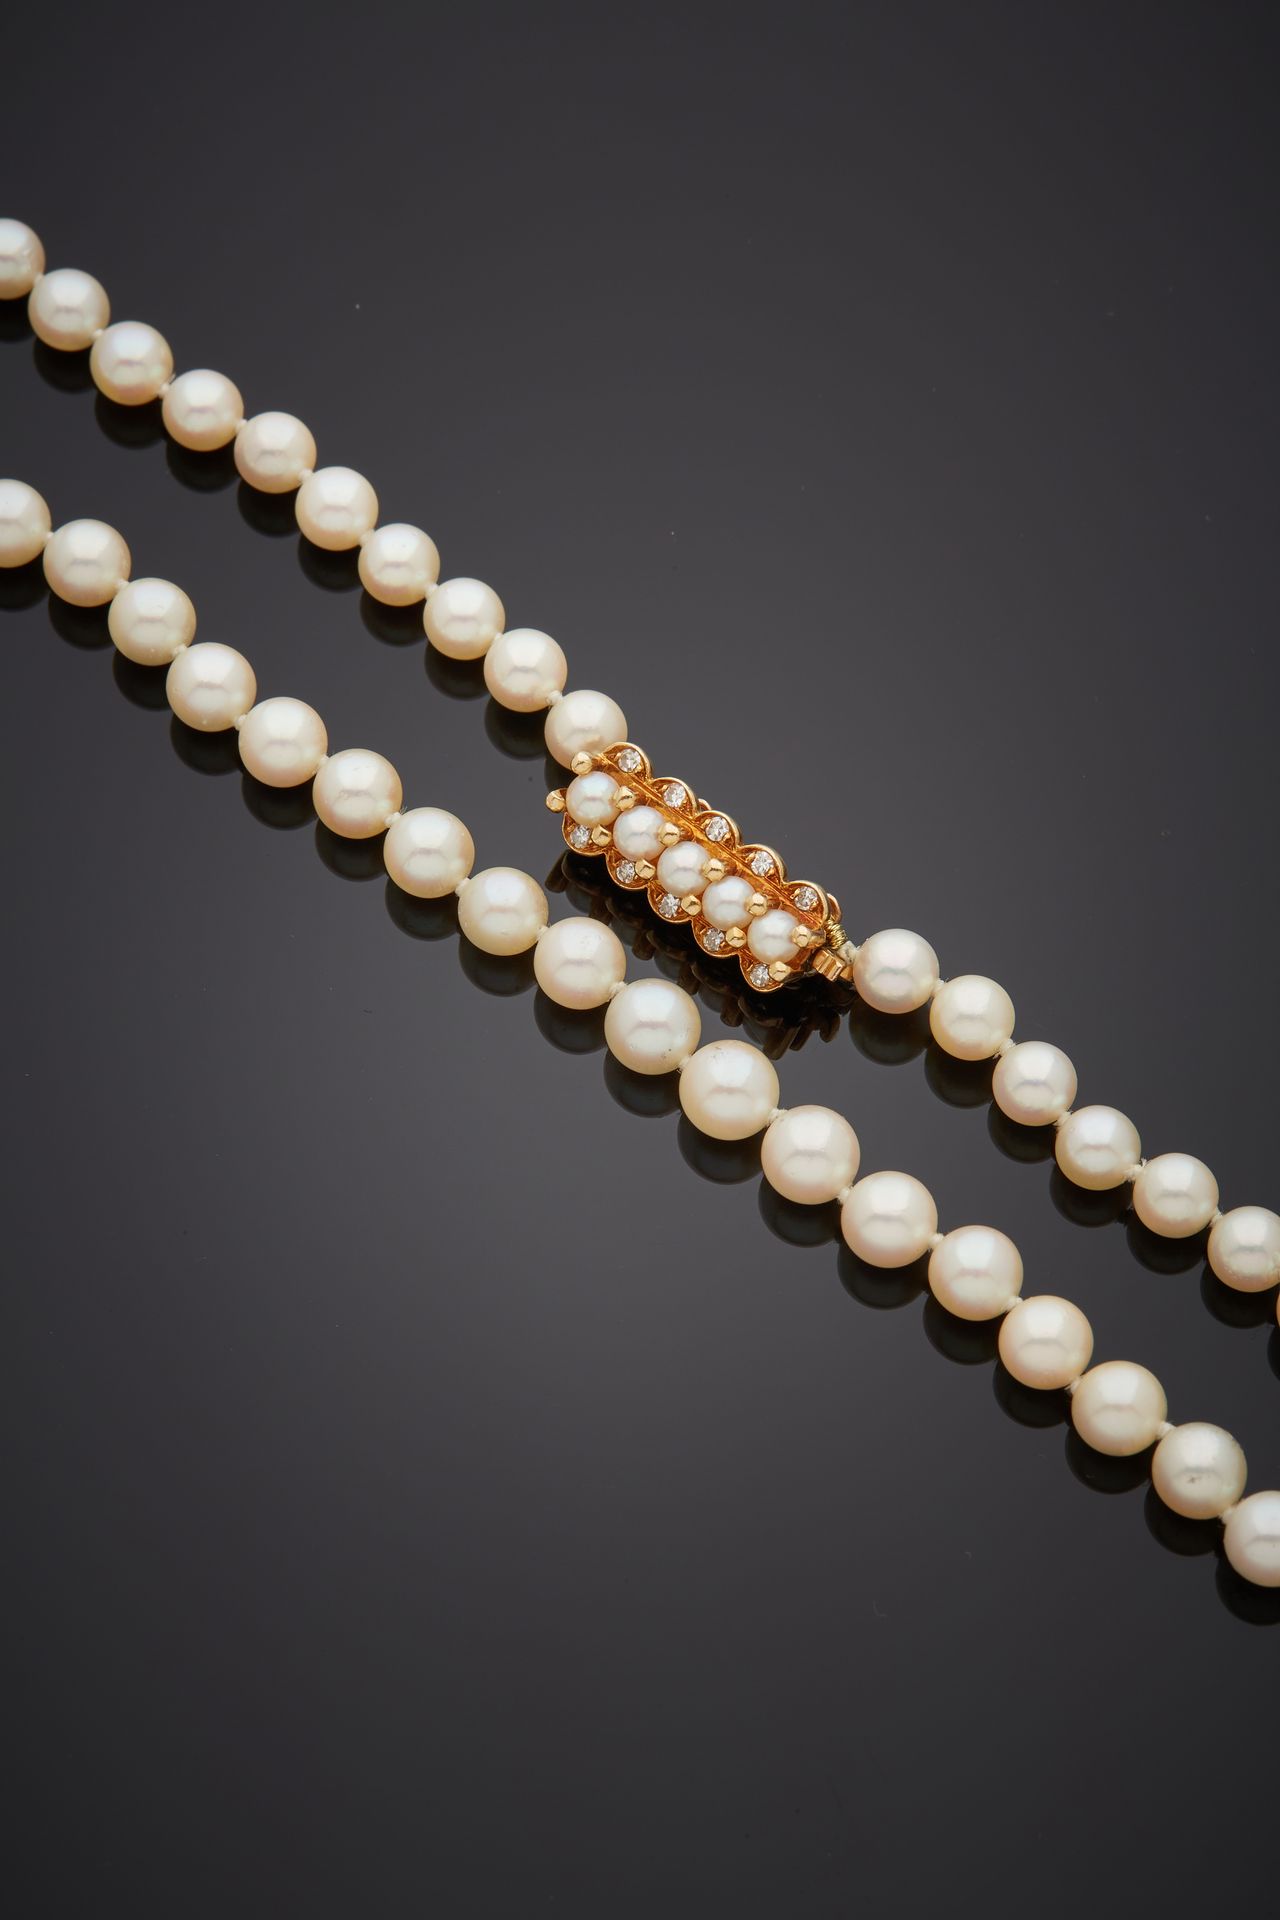 Null 项链由一排白色养殖珍珠组成。黄金（750‰）"发夹 "扣（原为手镯，重新穿线）上装饰有五颗养殖珍珠，并镶有8/8切割钻石。 
珍珠的直径：5.5至6.&hellip;